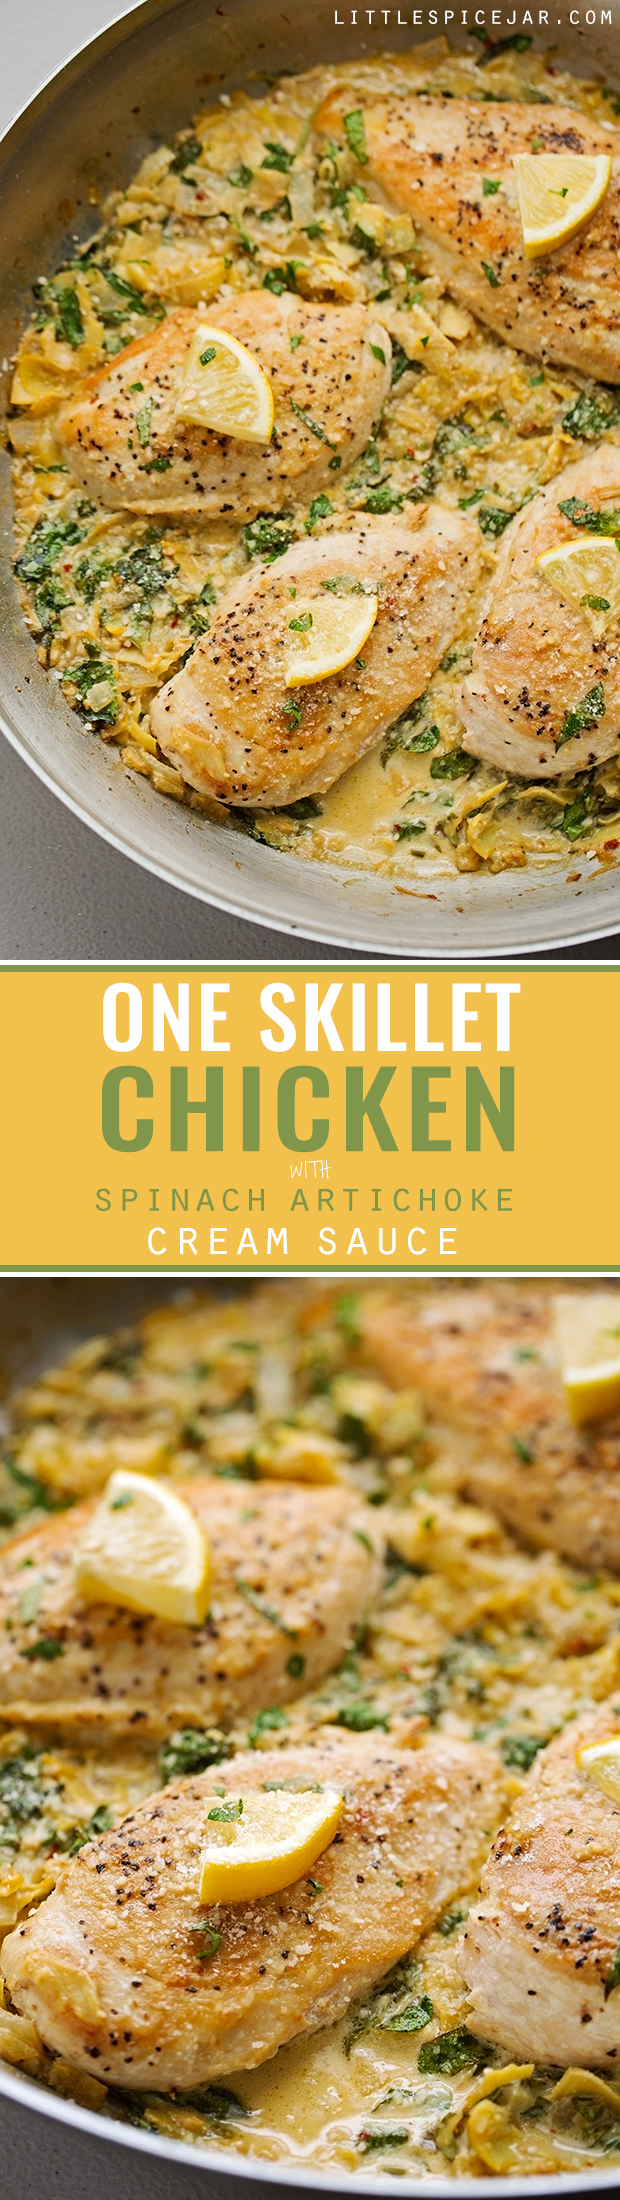 Skillet Chicken with Spinach Artichoke Cream Sauce Recipe| Little Spice Jar